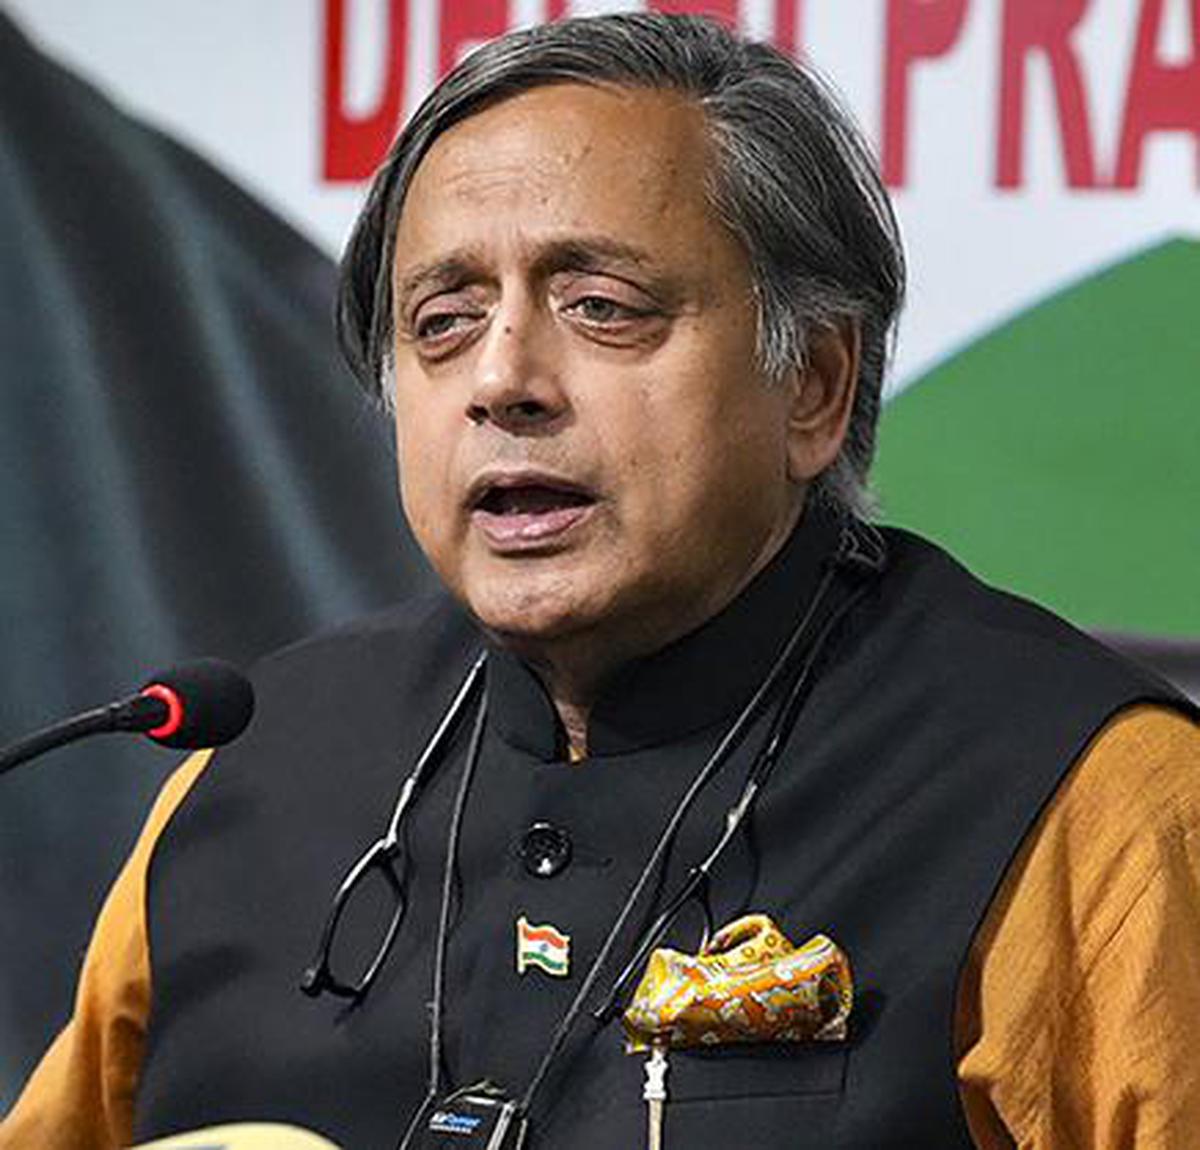 Cong. views Tharoor’s Malabar pitch as politically fractious